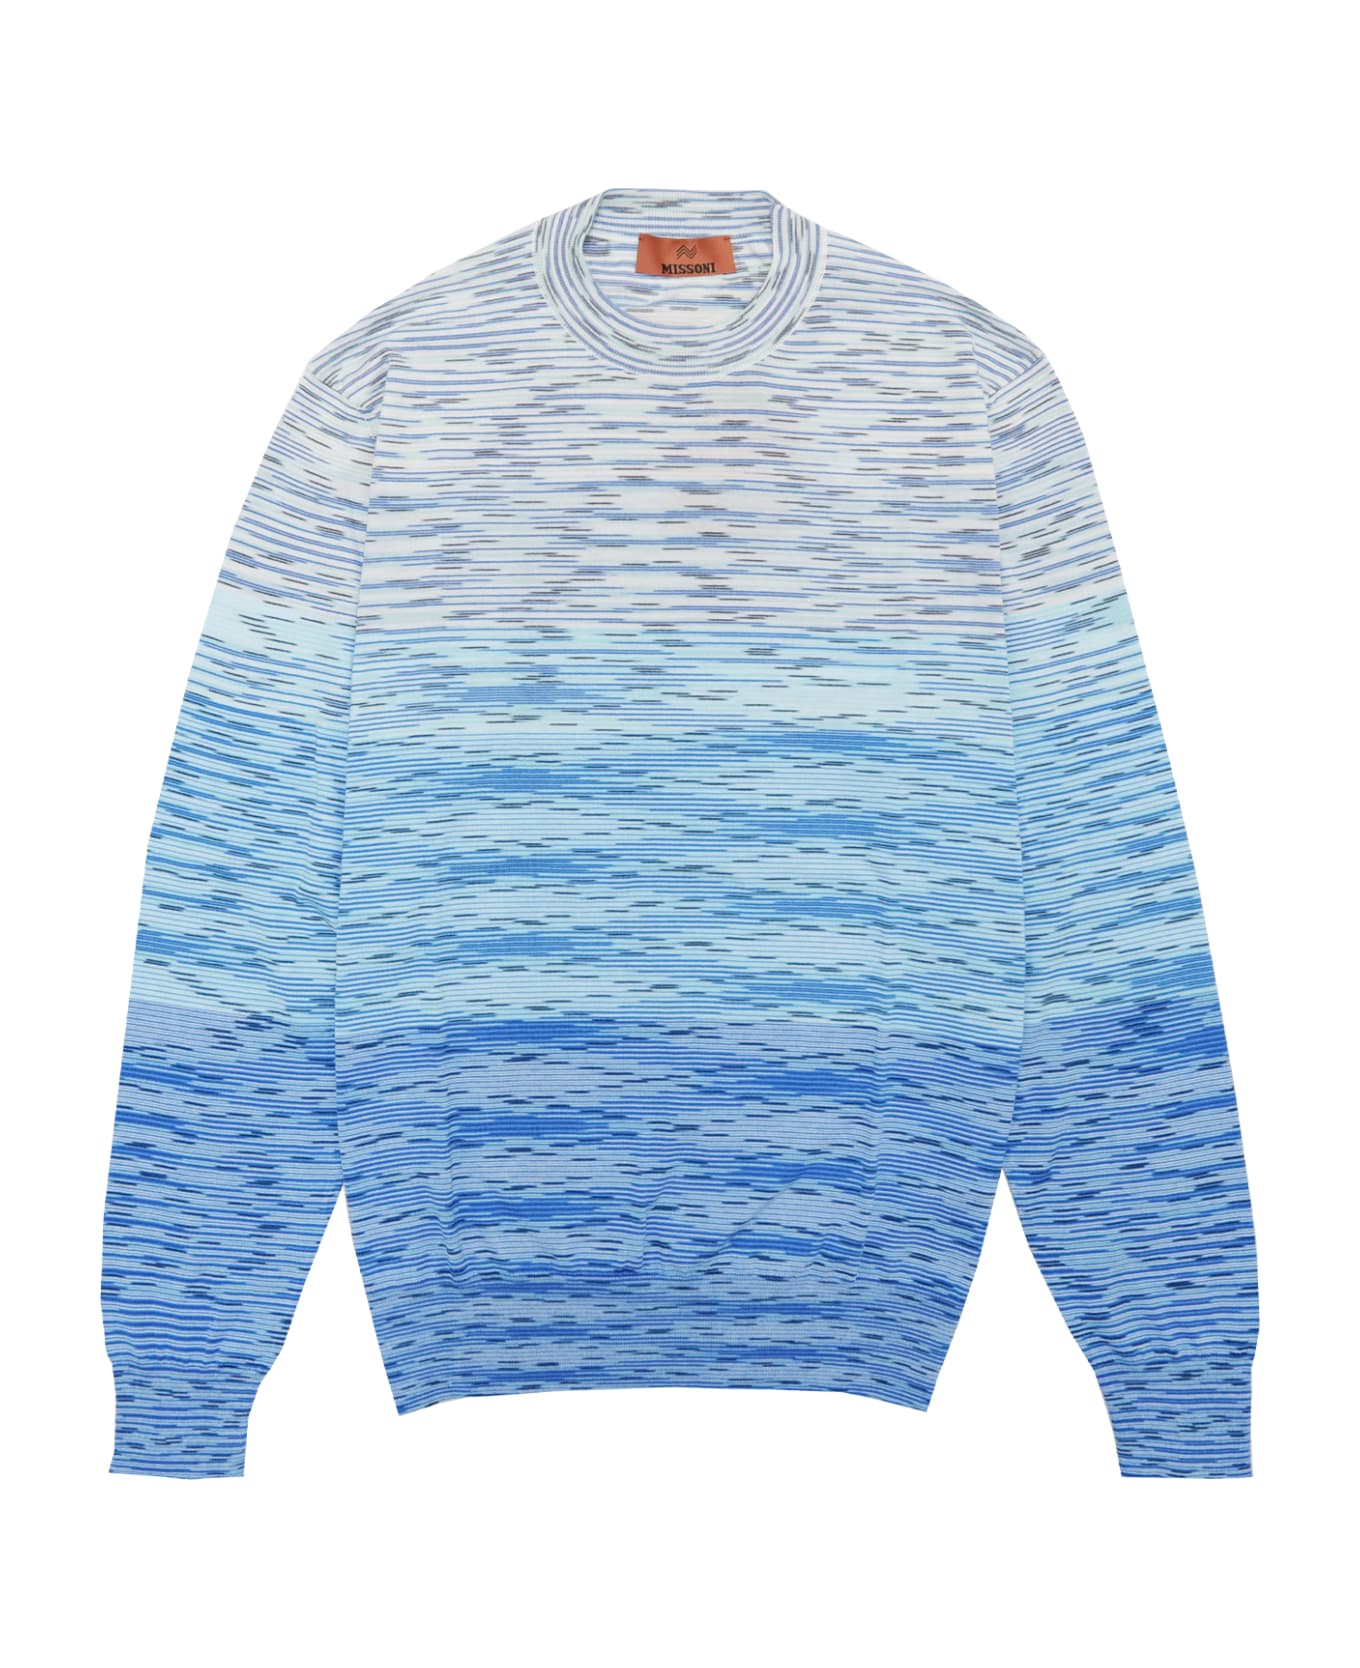 Missoni Sweater - Blue フリース